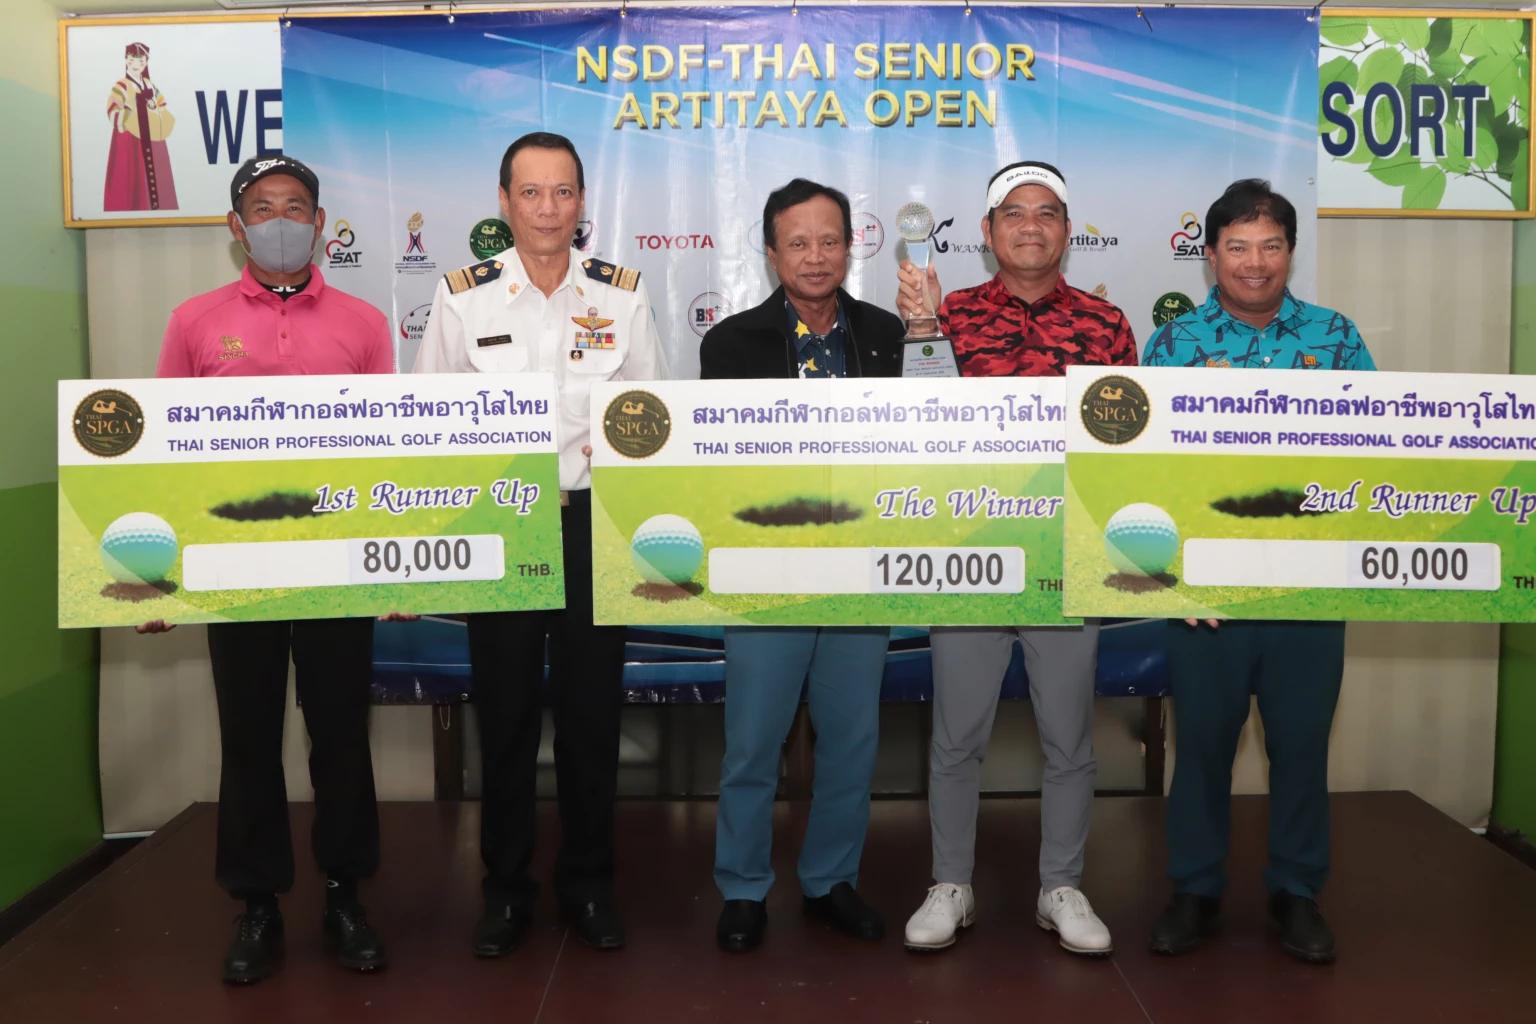 Udorn cashes in on strong start to retain Artitaya Open title on Thai Senior Tour